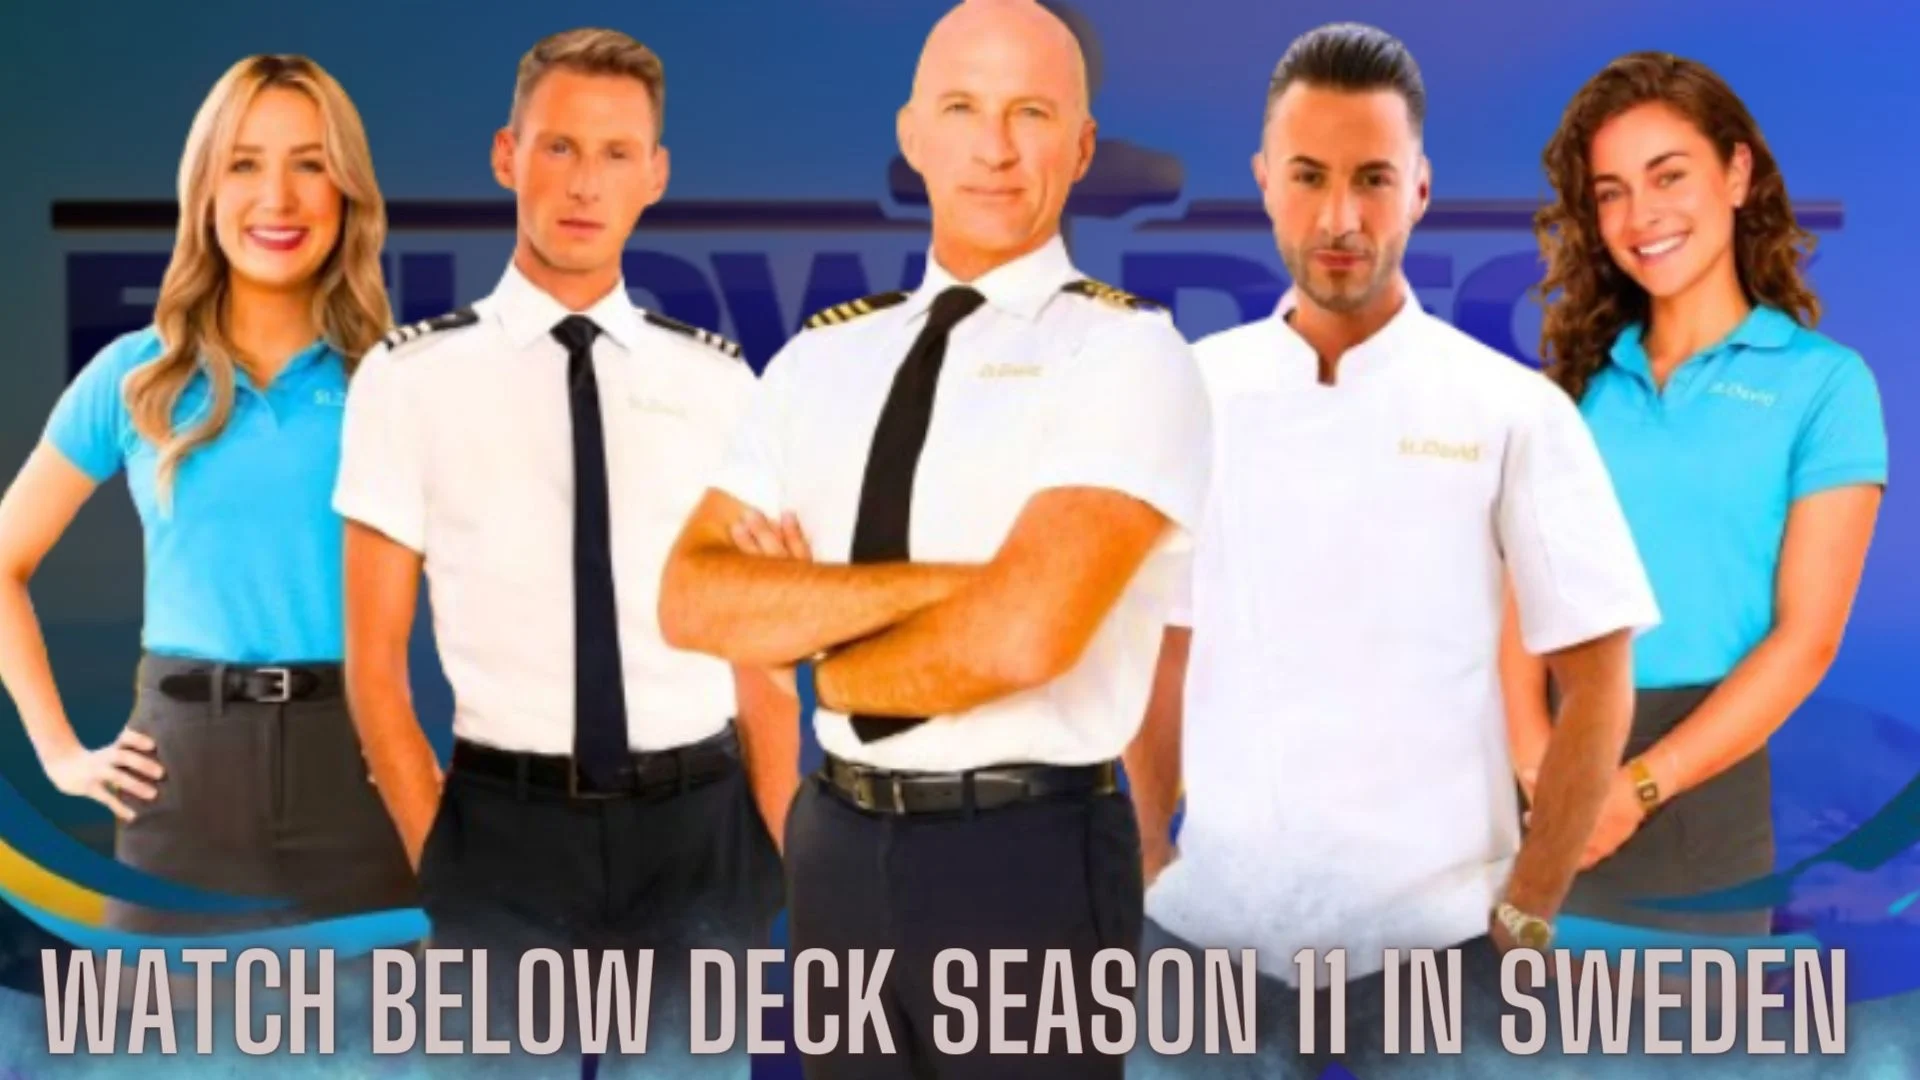 Watch Below Deck Season 11 in Sweden